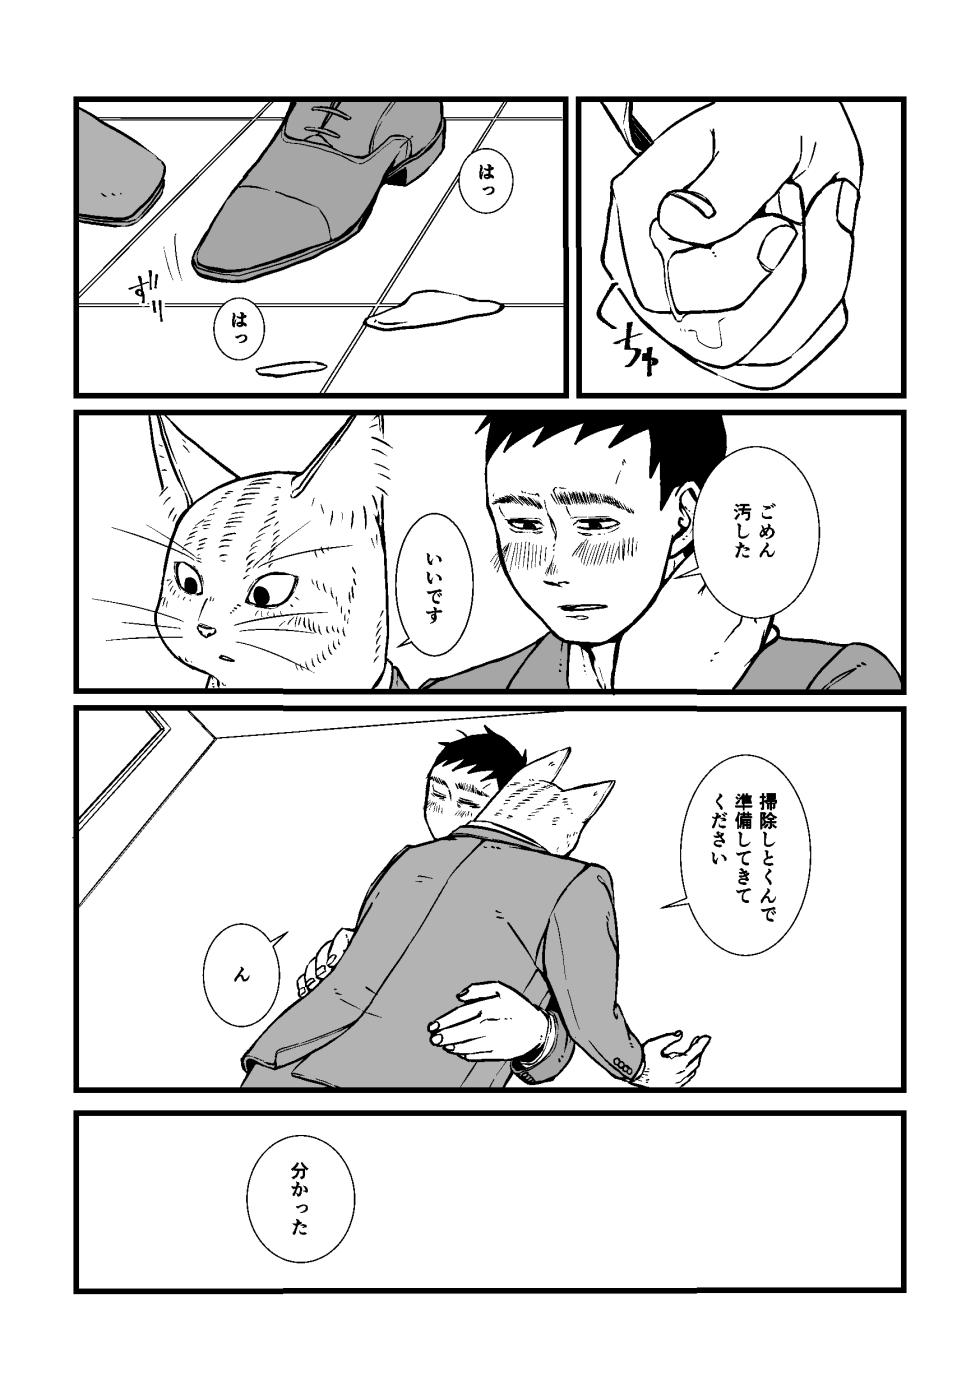 [Nozomi] Sansa x Tsukauchi R18 Manga (Boku no Hero Academia) [Digital] - Page 10